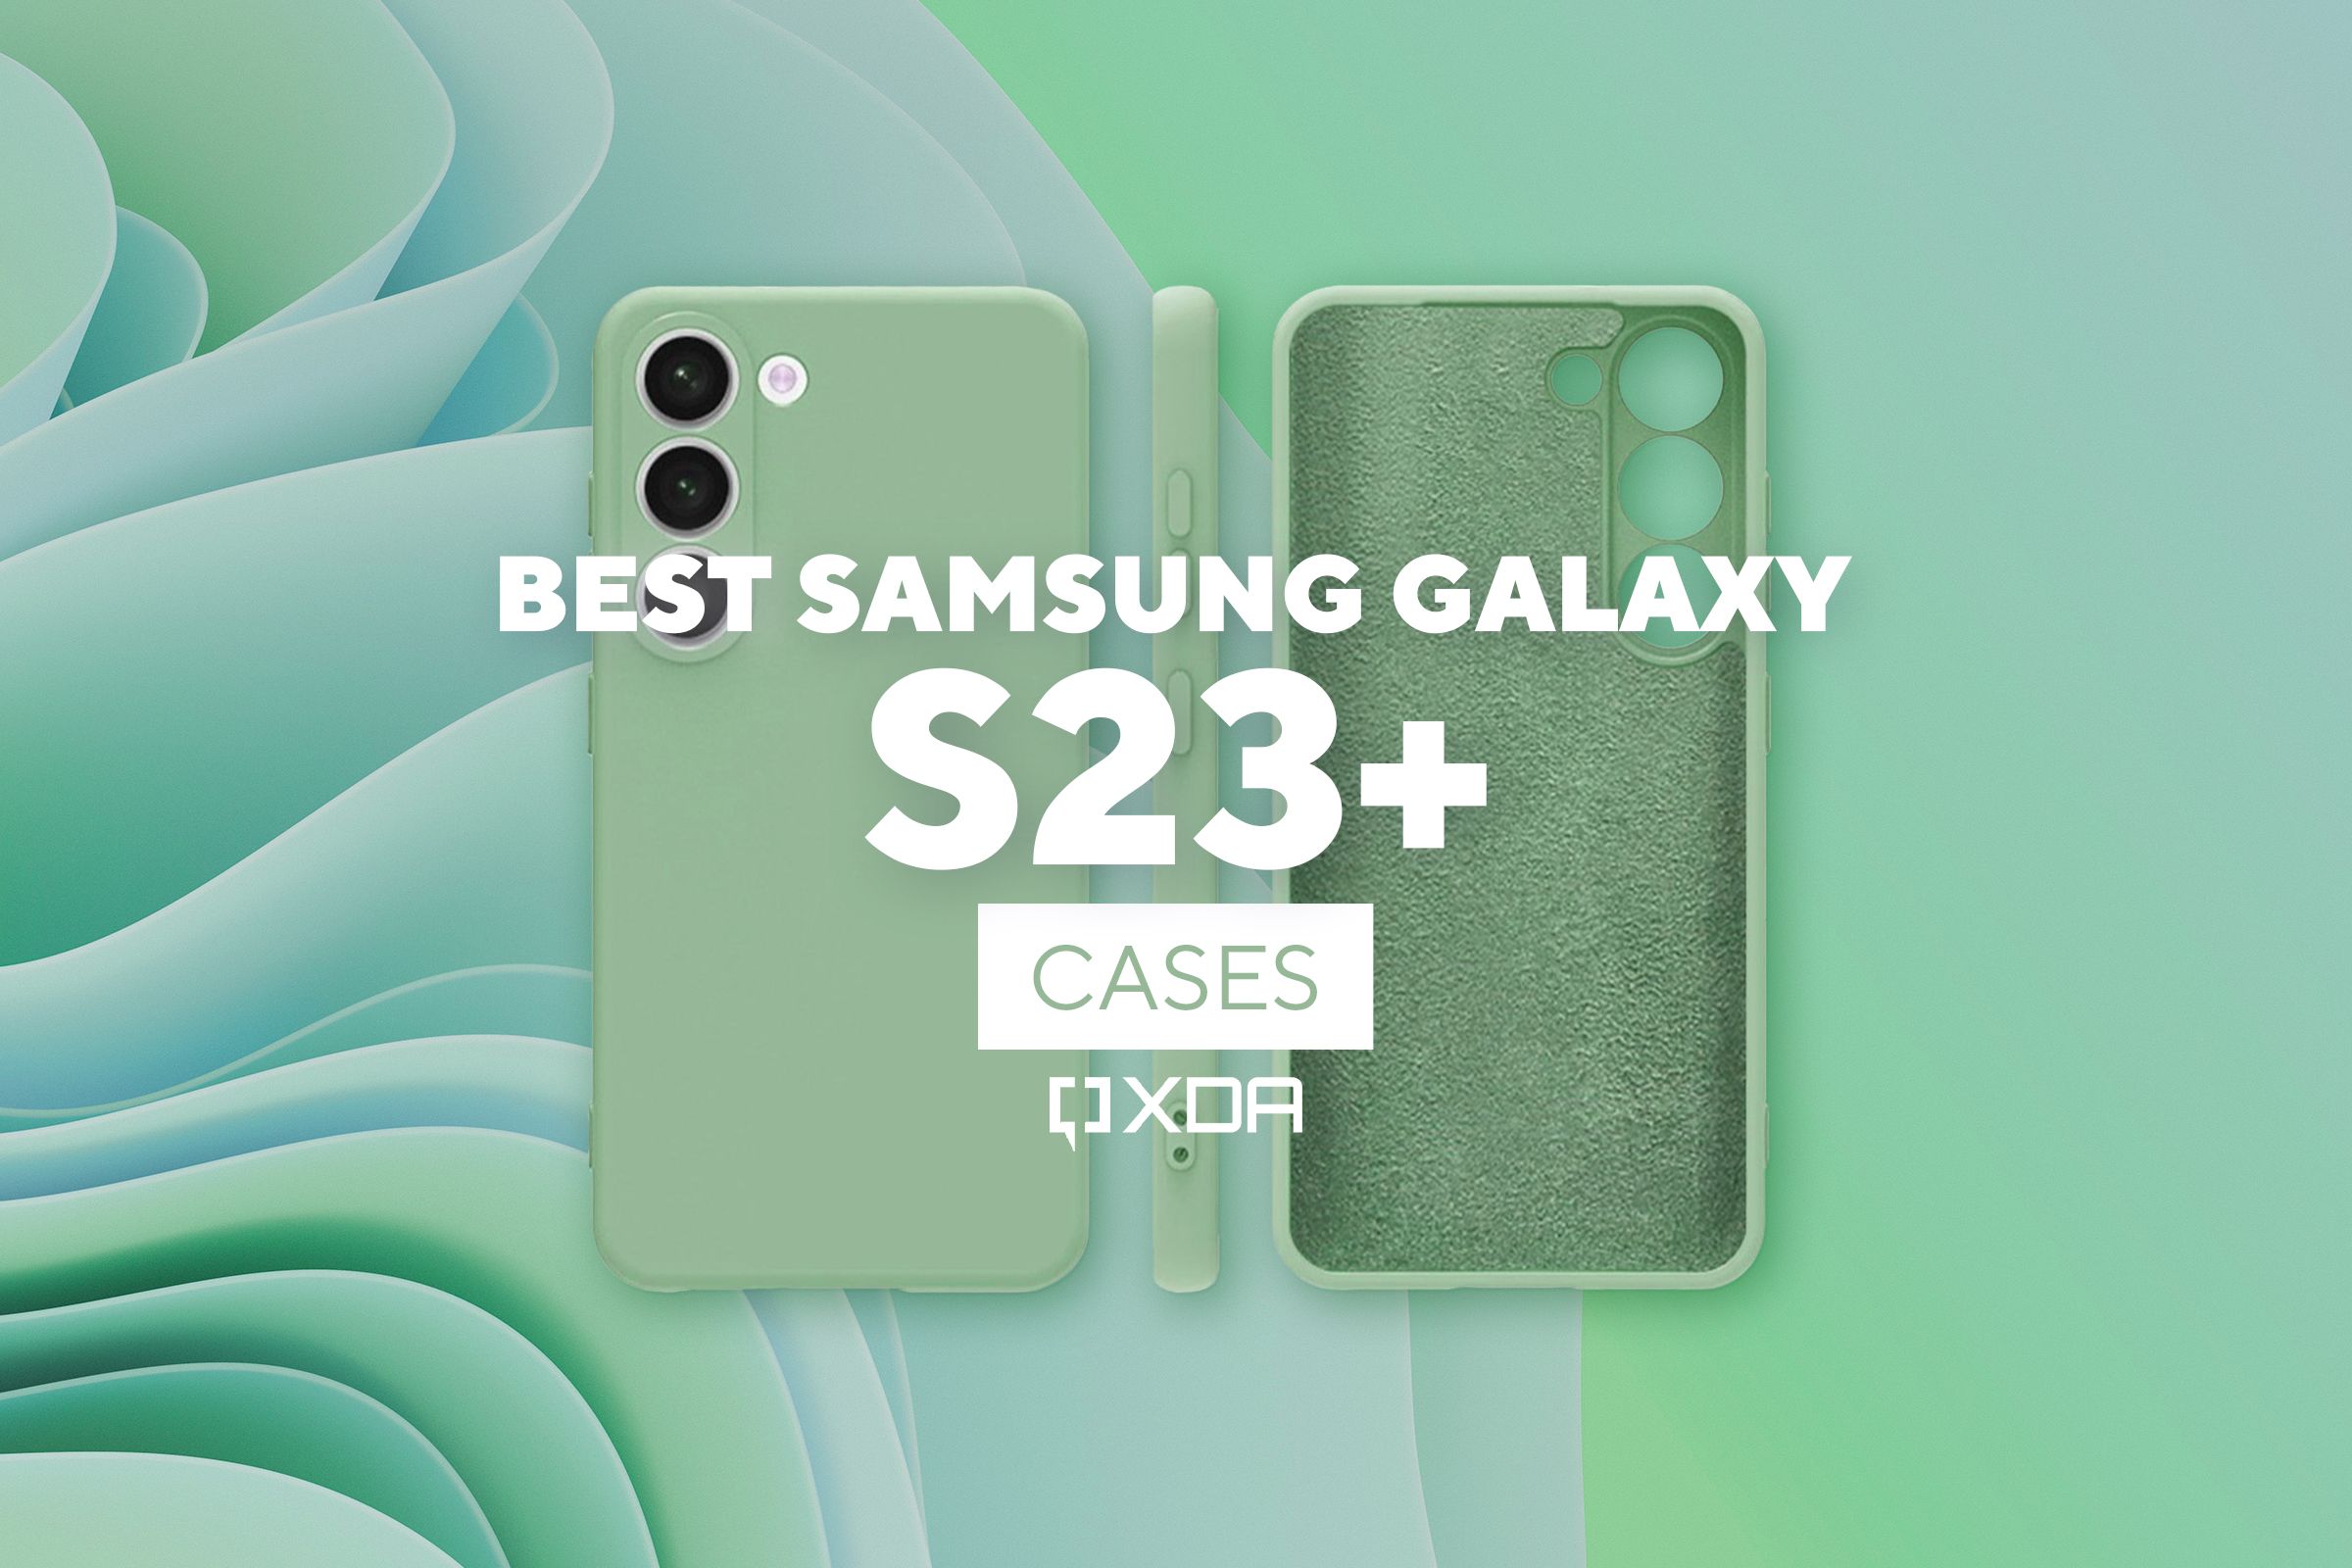 Best Samsung Galaxy S23+ cases: 12 picks that we love